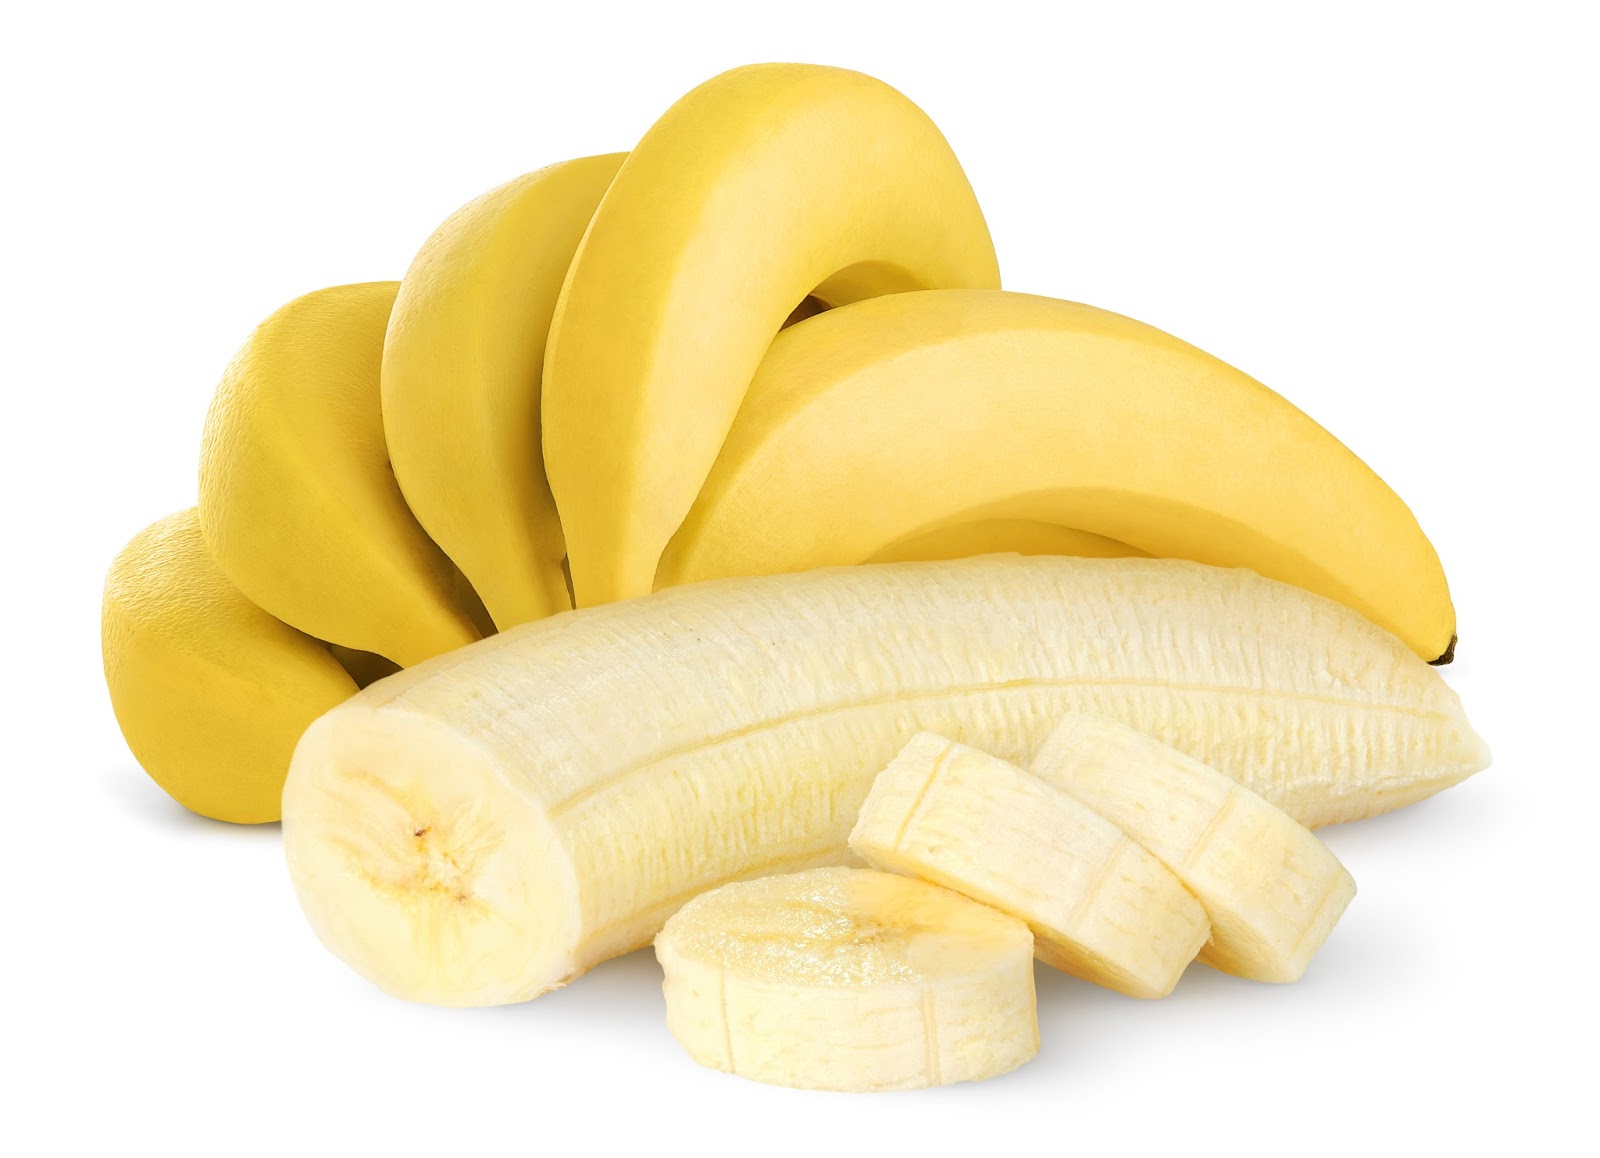 6 problemas de salud que los plátanos pueden tratar mejor que una píldora